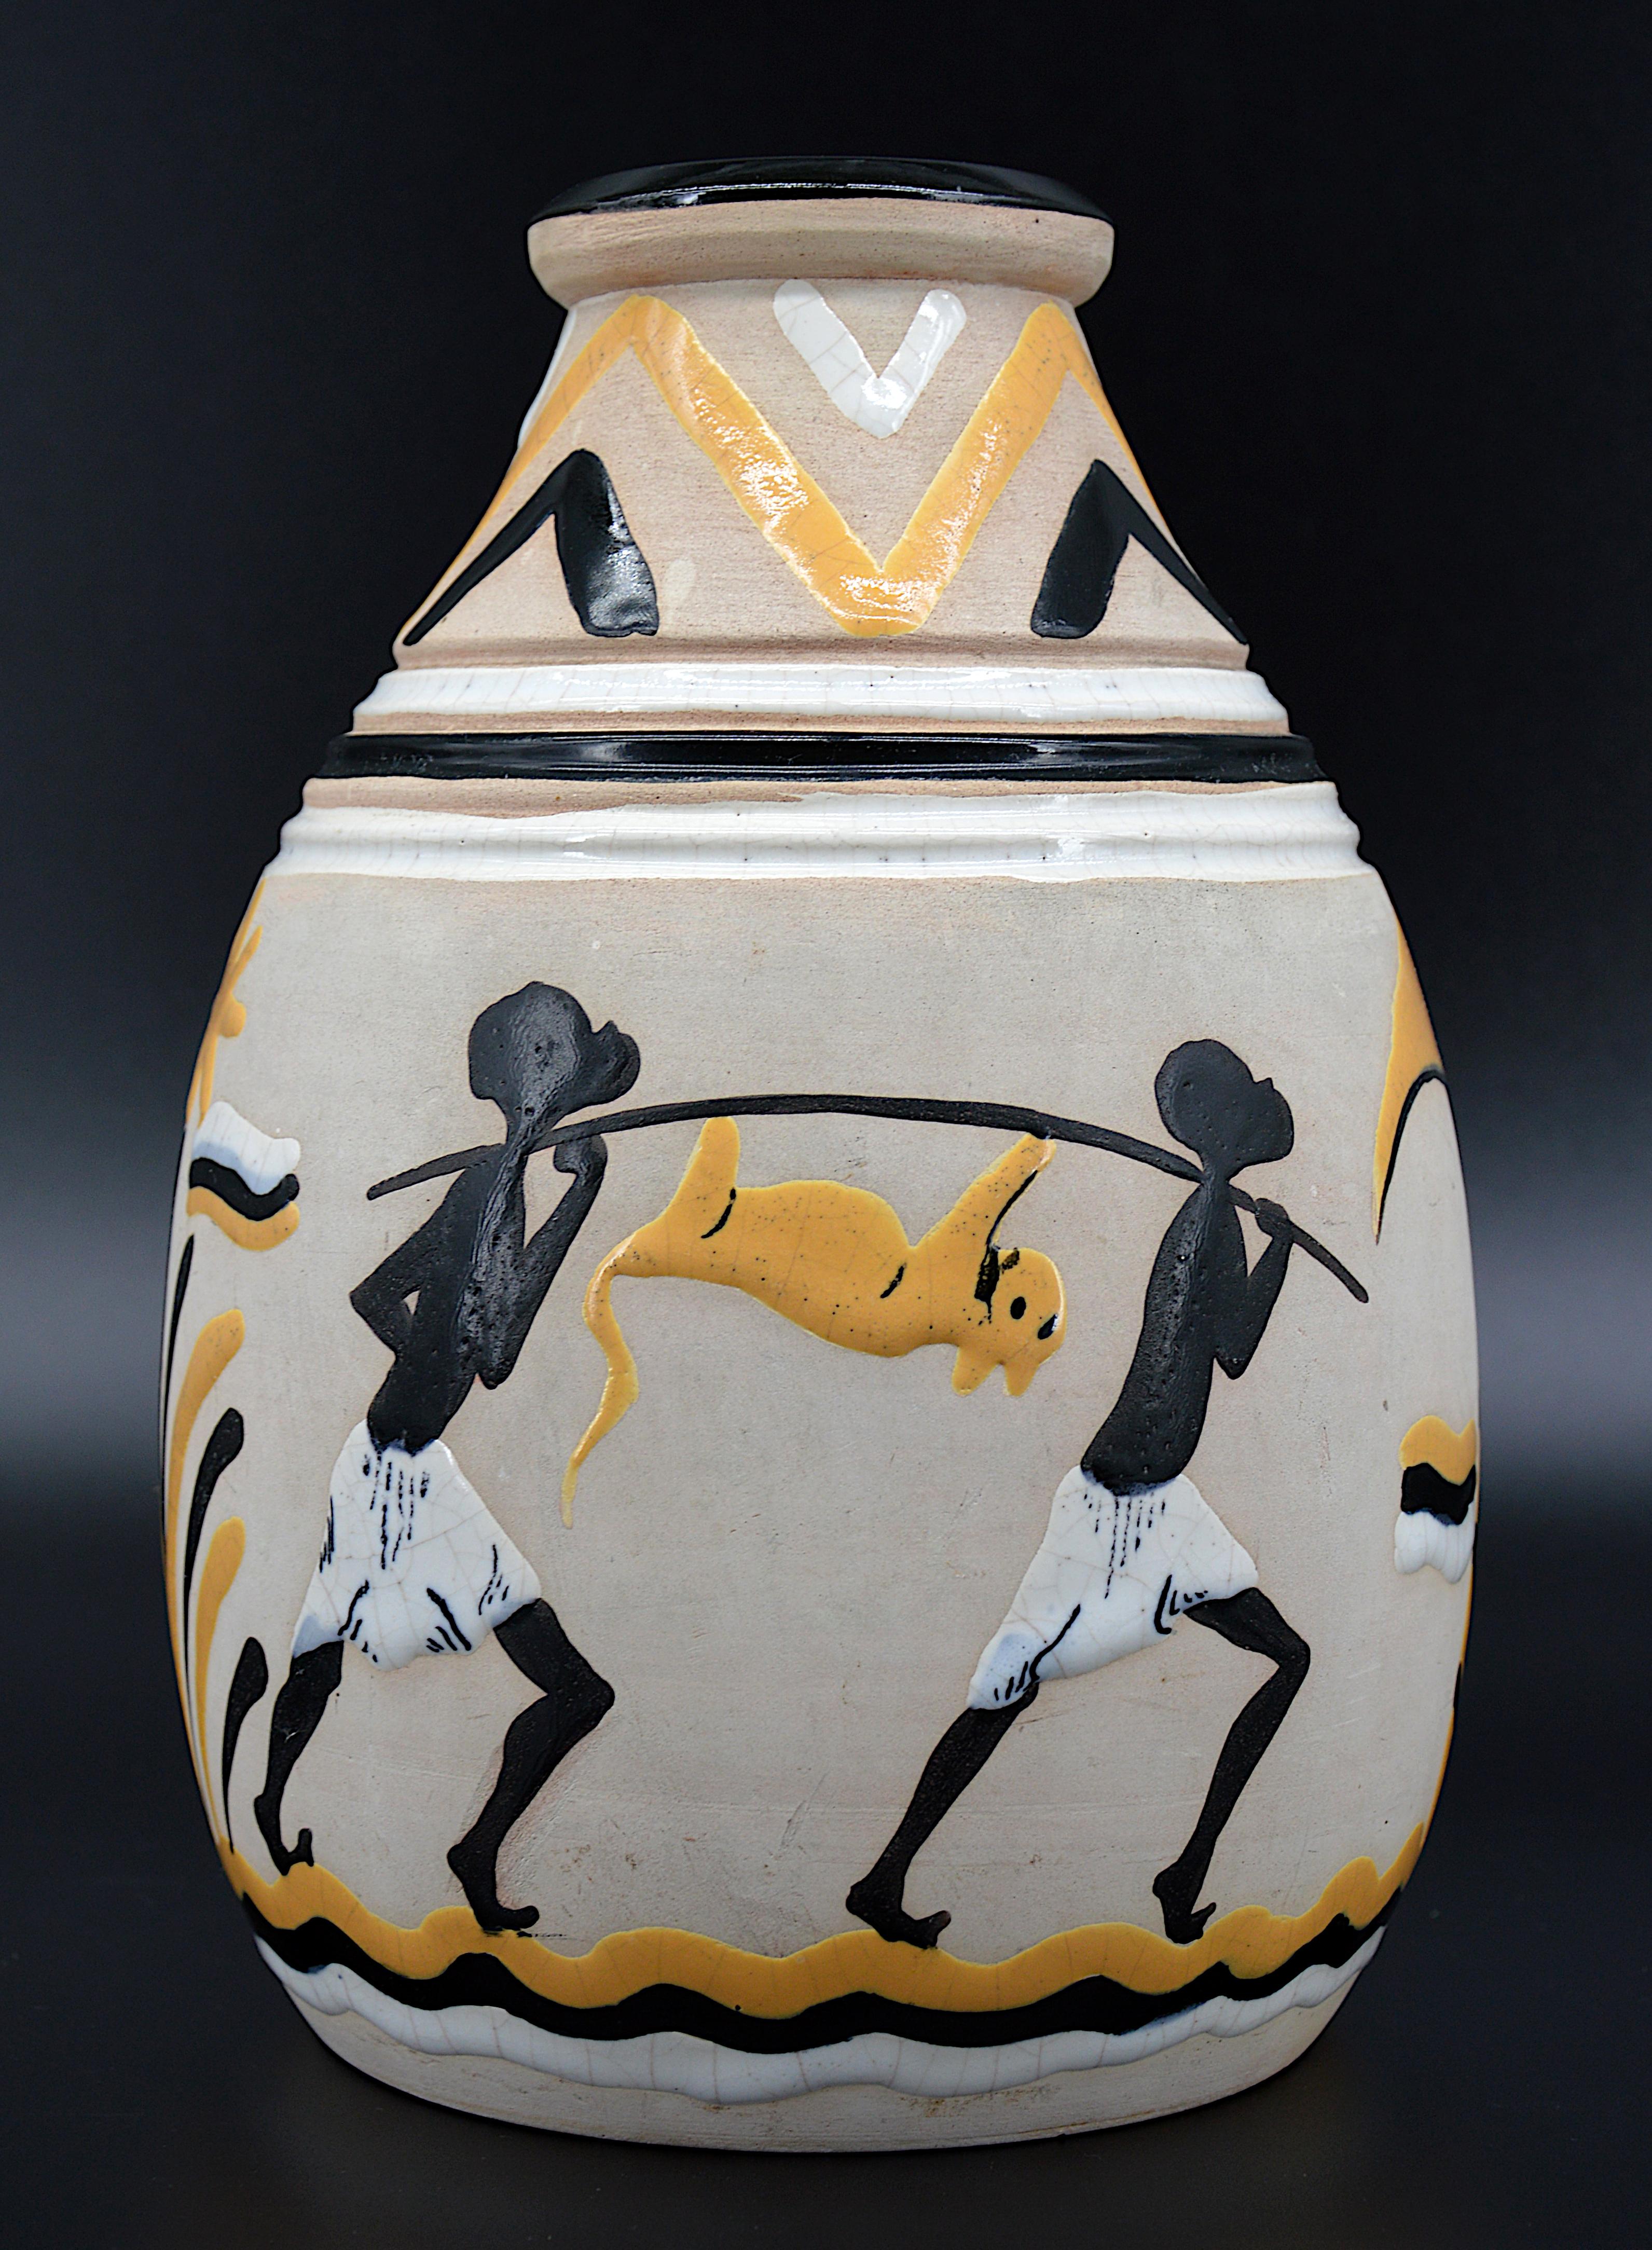 Vase en céramique Art déco, France, 1931. Vase en céramique fabriqué spécialement pour l'Exposition coloniale internationale de 1931 à Paris. La première fois que nous le voyons. Hauteur : 23,8 cm, diamètre : 17 cm. Marqué sous la base 